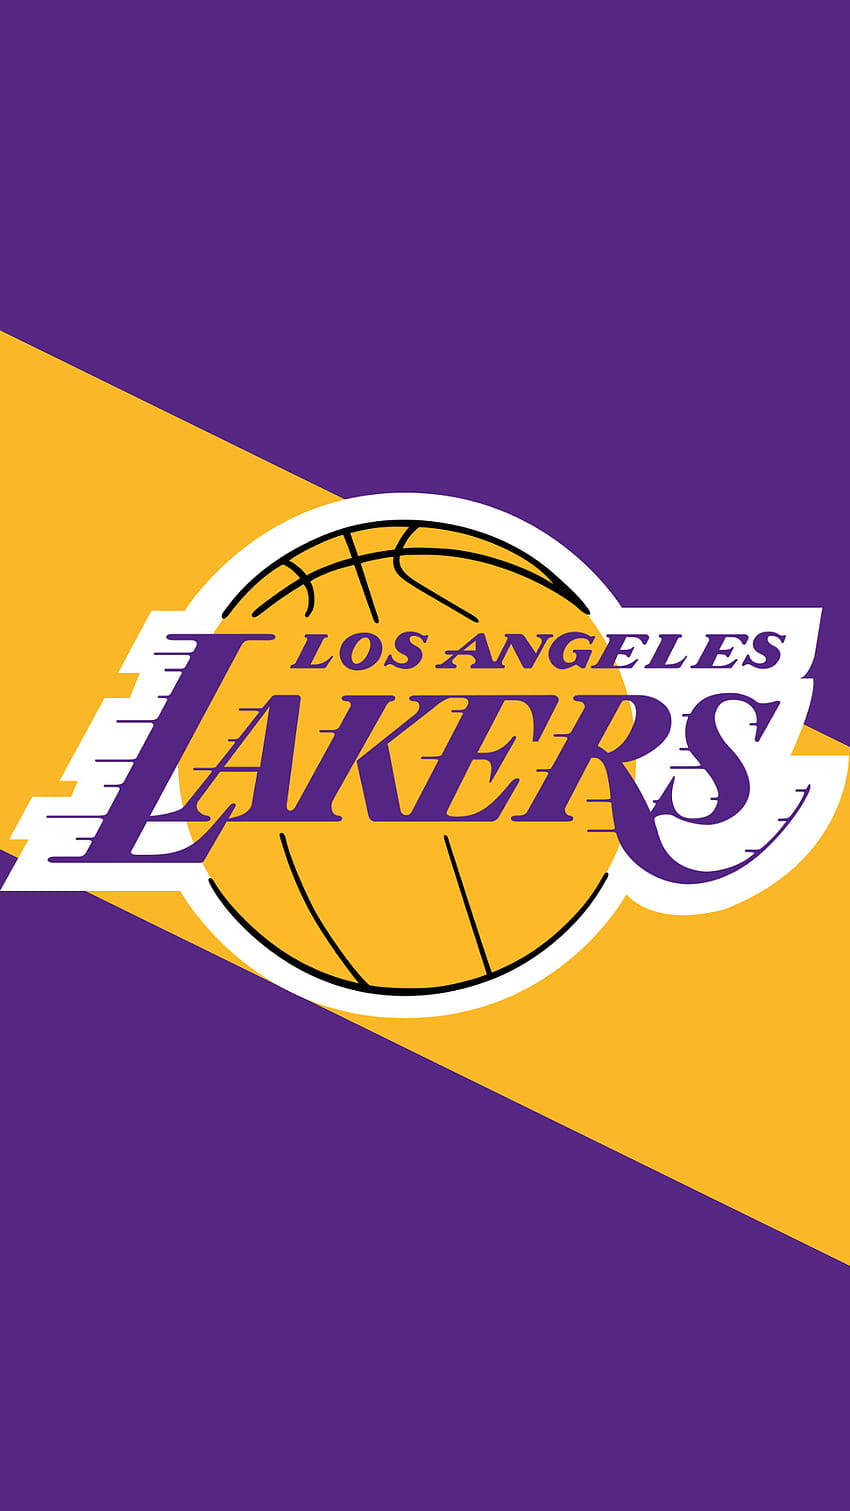 Logogiallo E Viola Dei Lakers Per Iphone. Sfondo